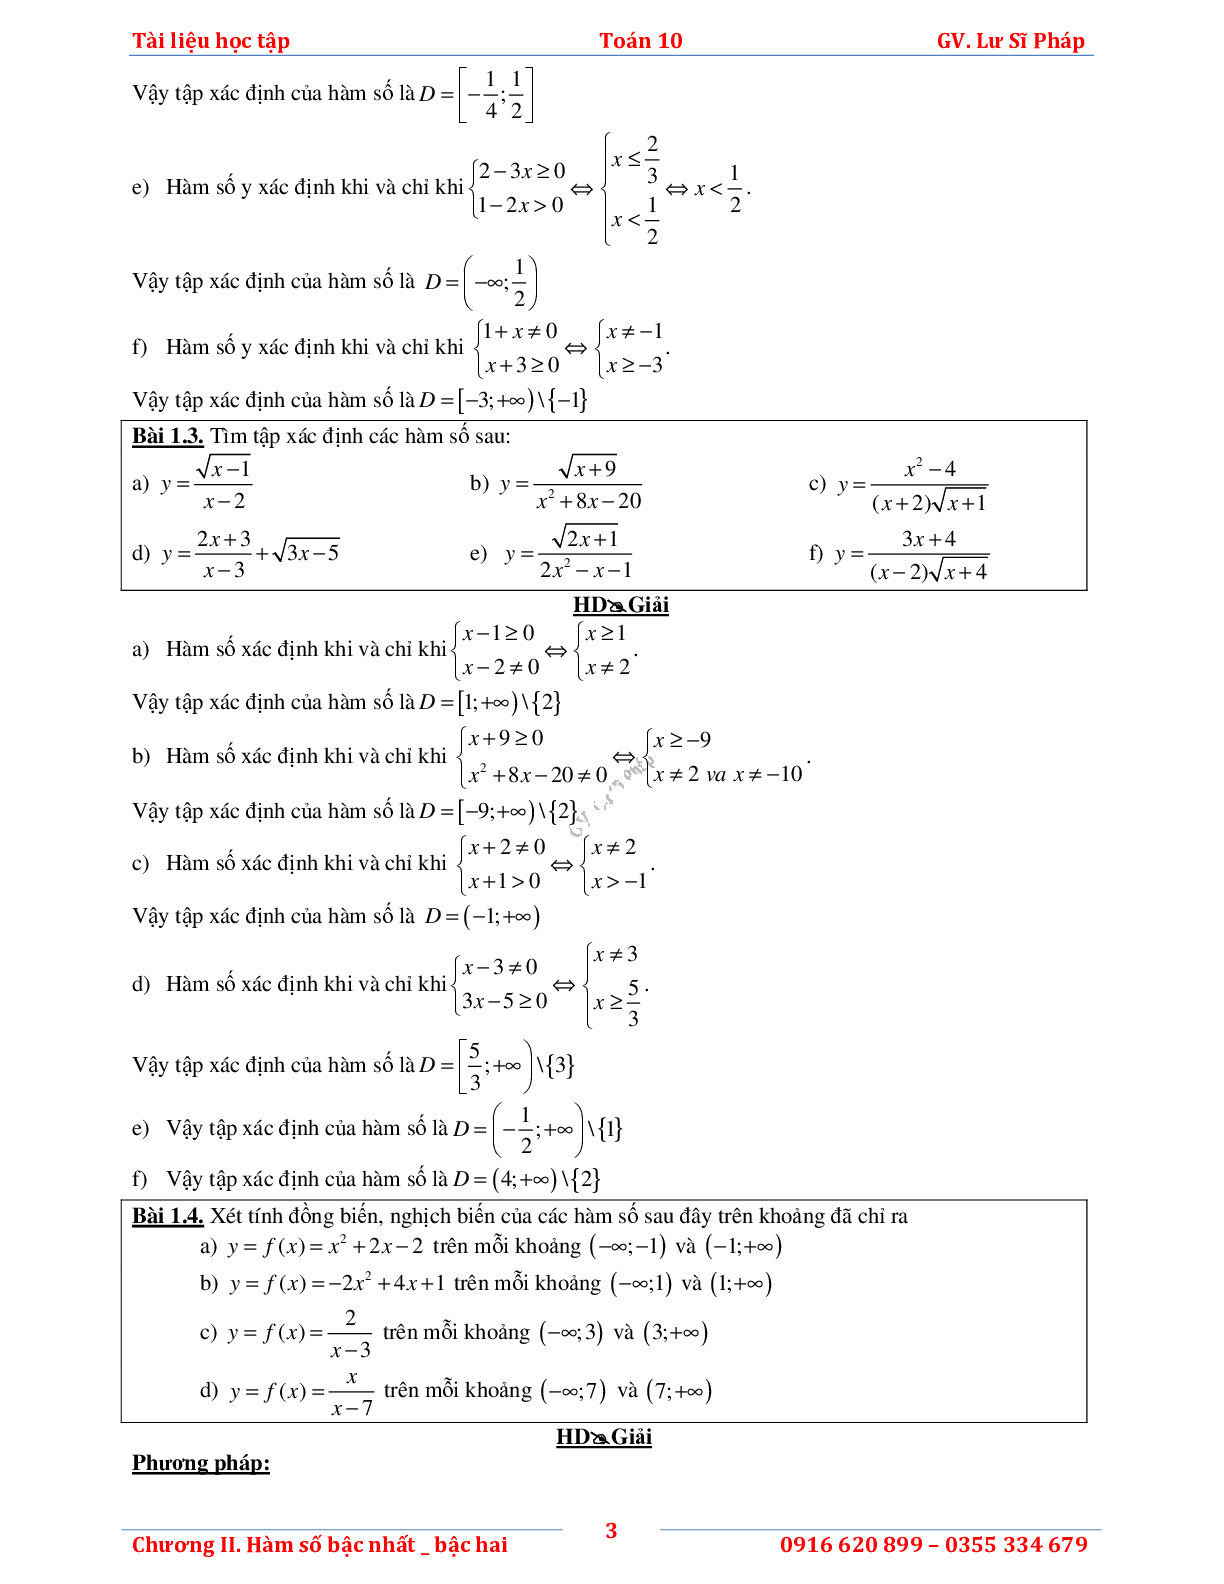 Tài liệu học tập hàm số bậc nhất và bậc hai (trang 7)